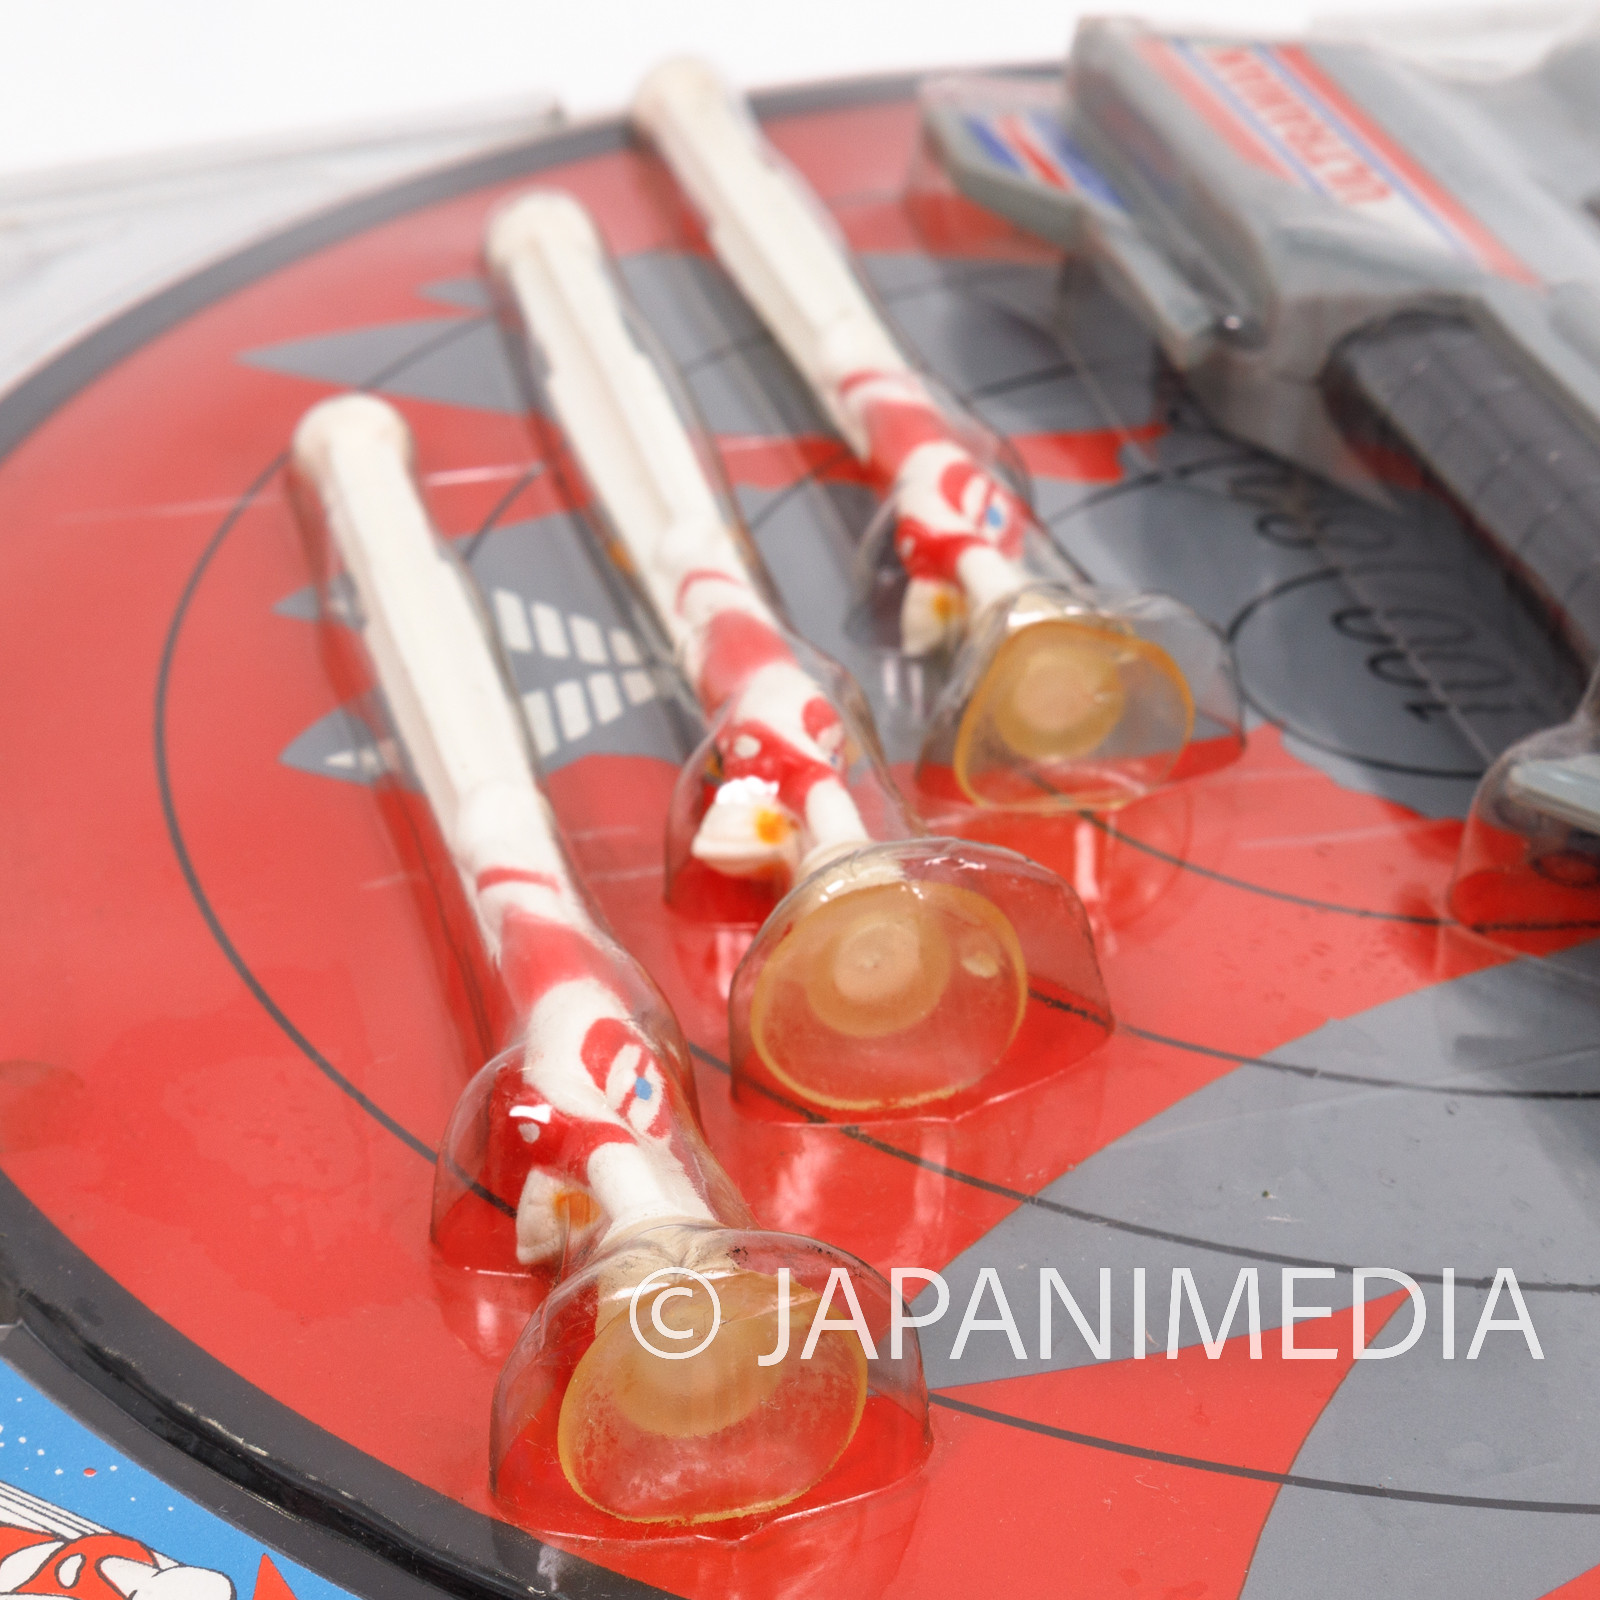 Ultraman Toy Darts Set RUN'A JAPAN